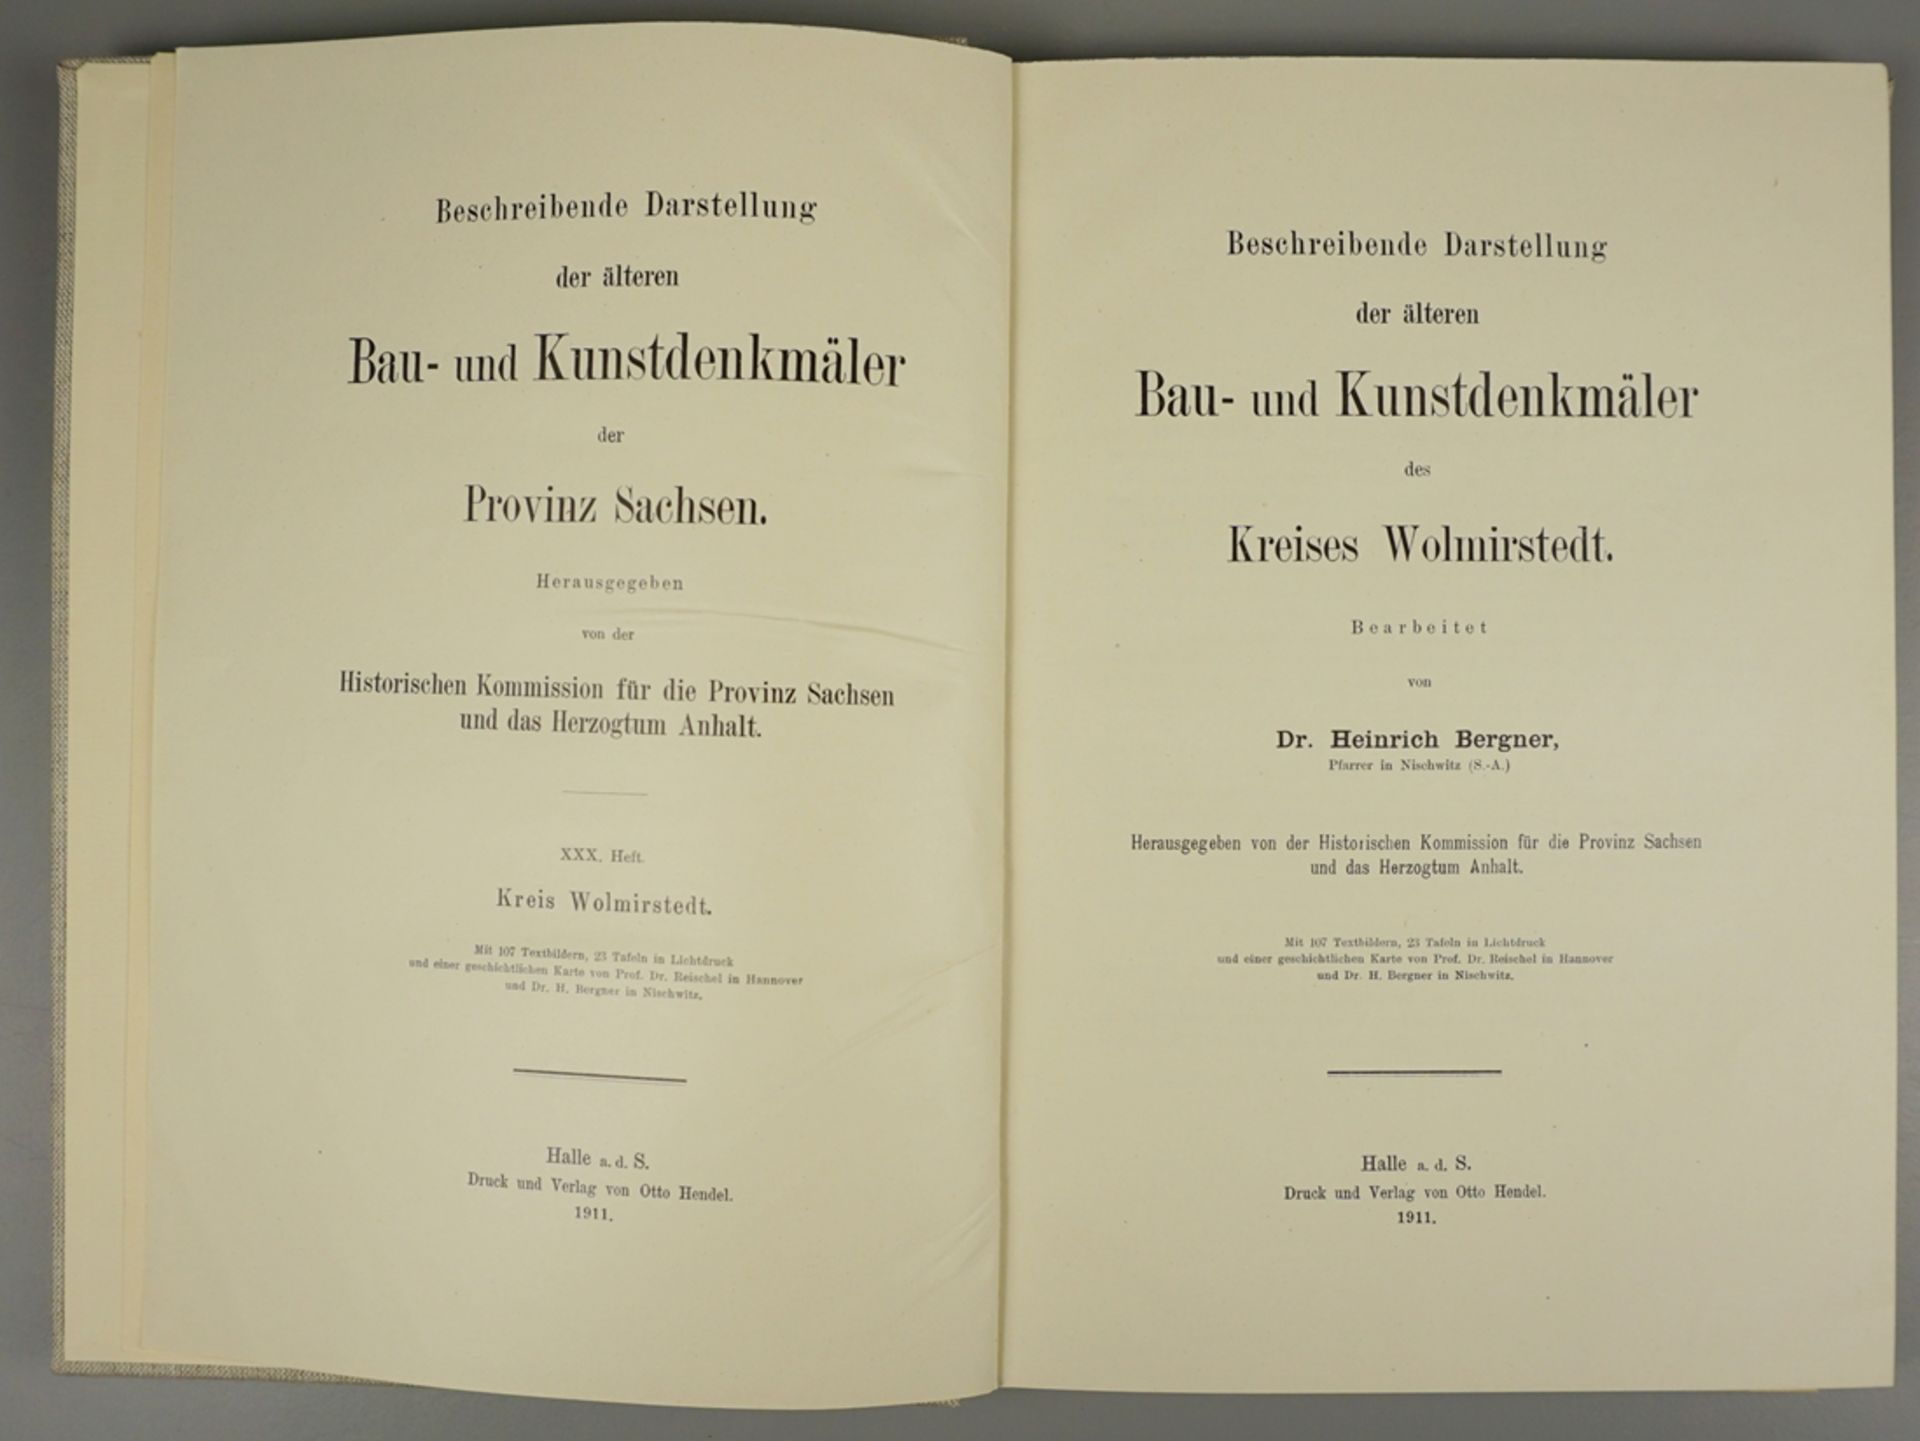 Beschreibende Darstellung der älteren Bau- und Kunstdenkmäler des Kreises Wolmirstedt, 1911